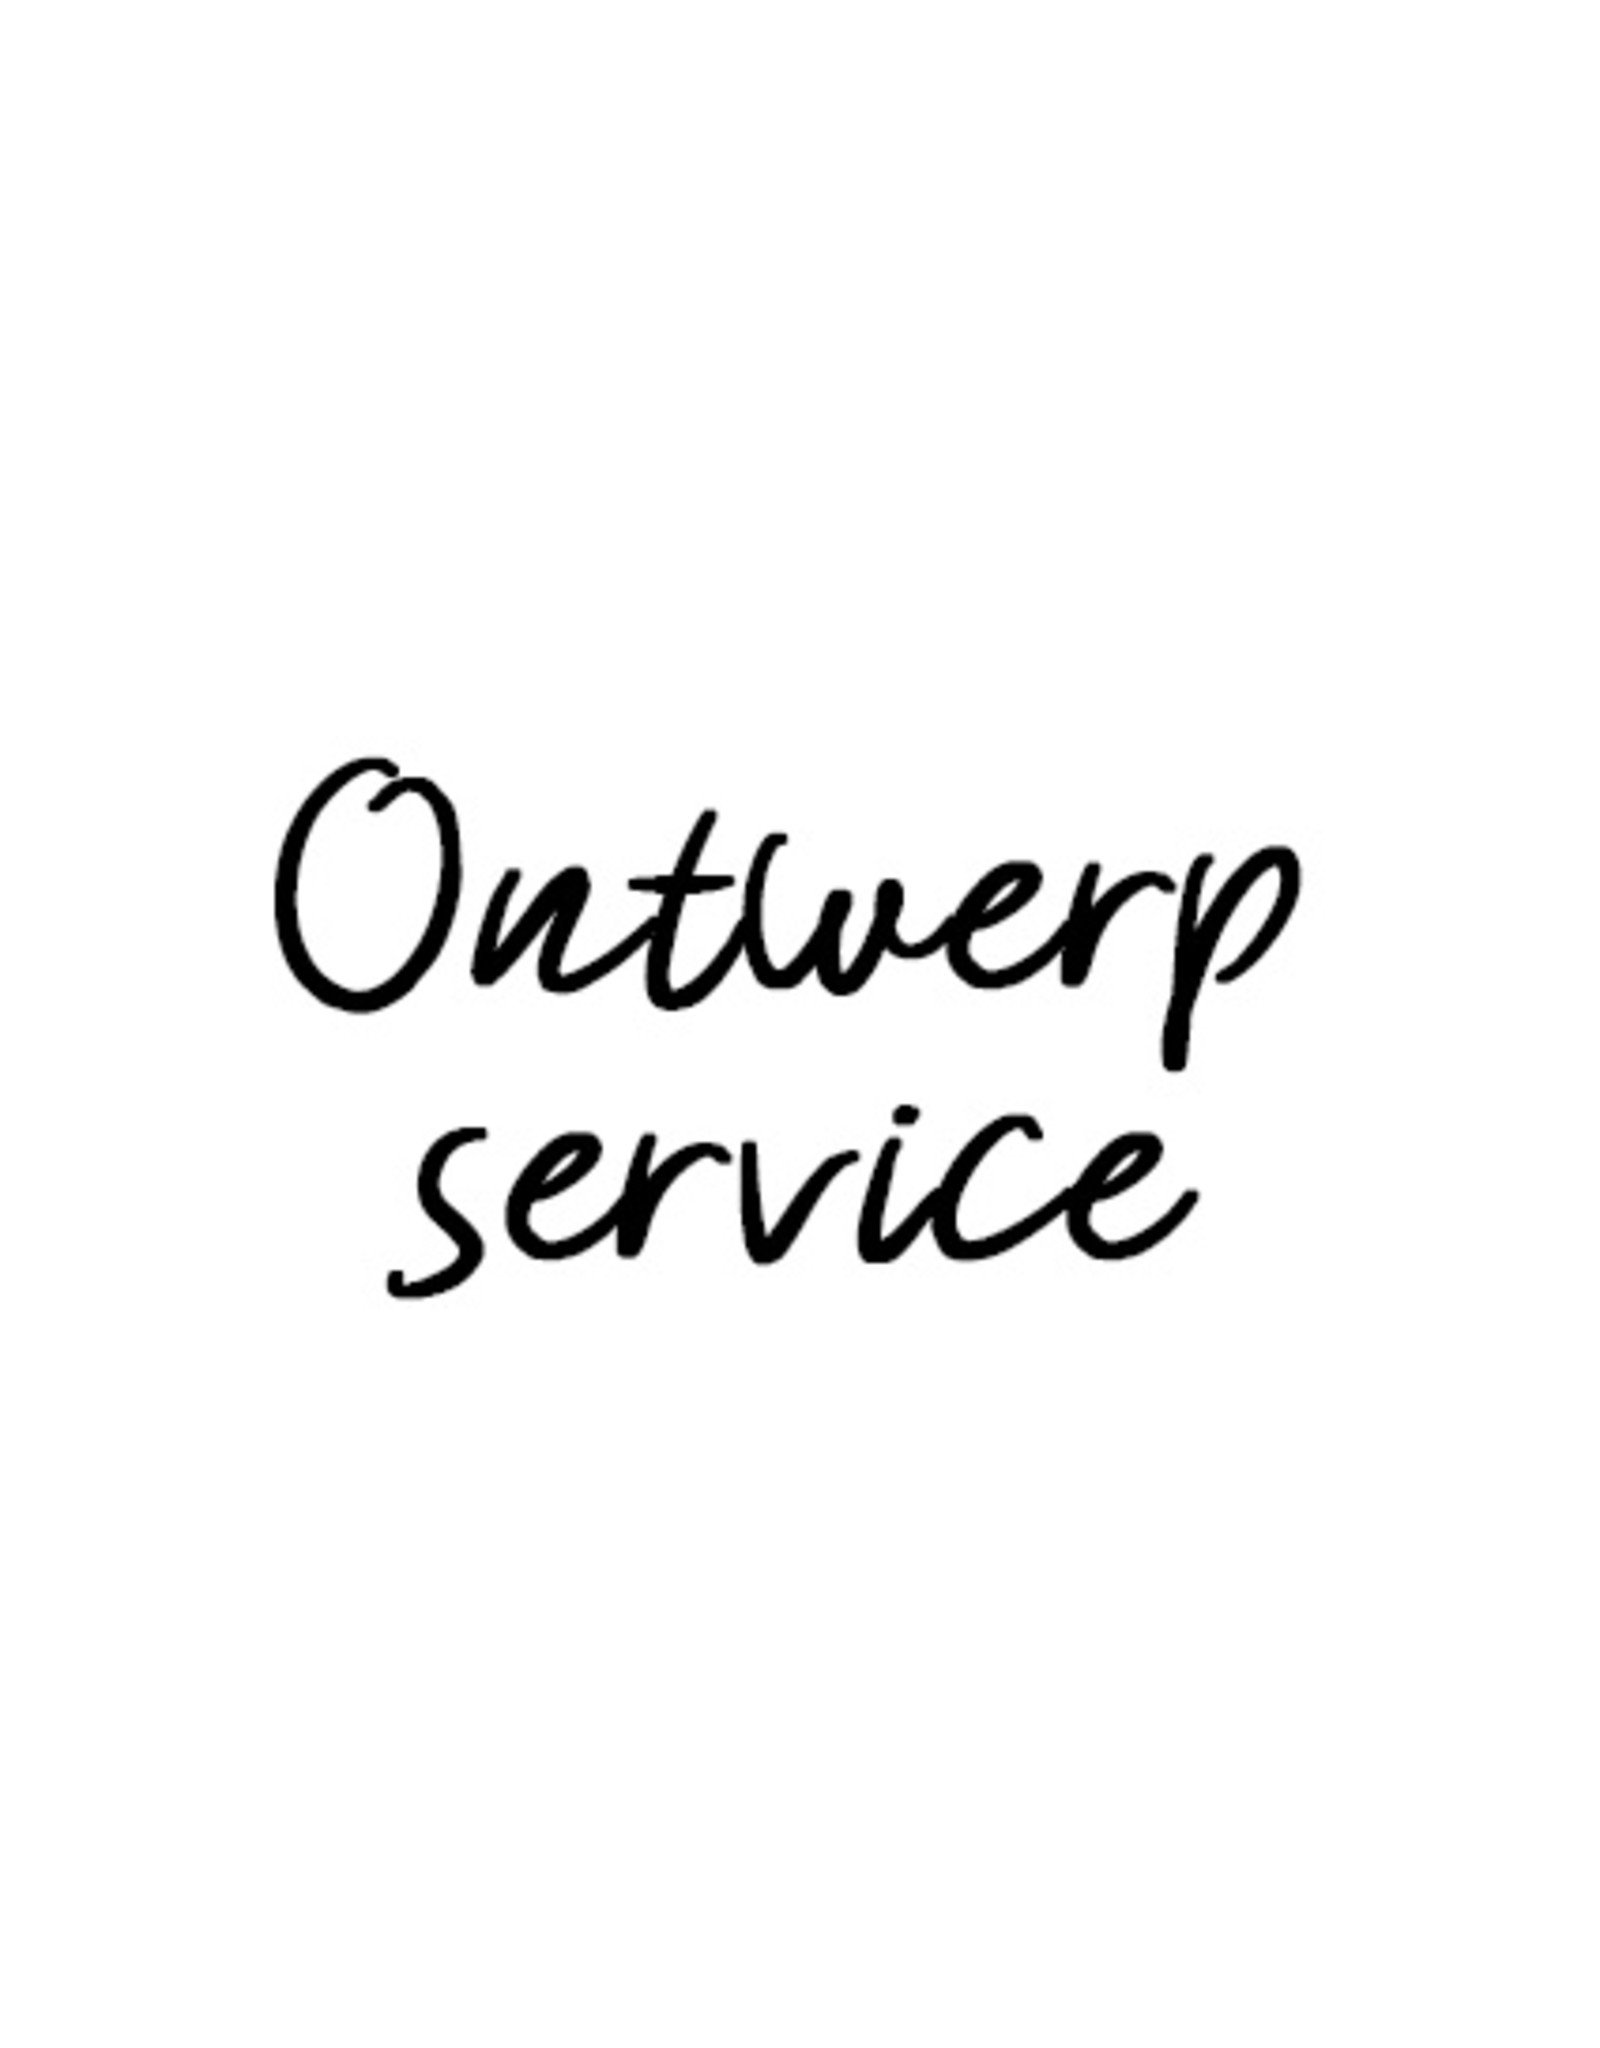 Ontwerp service